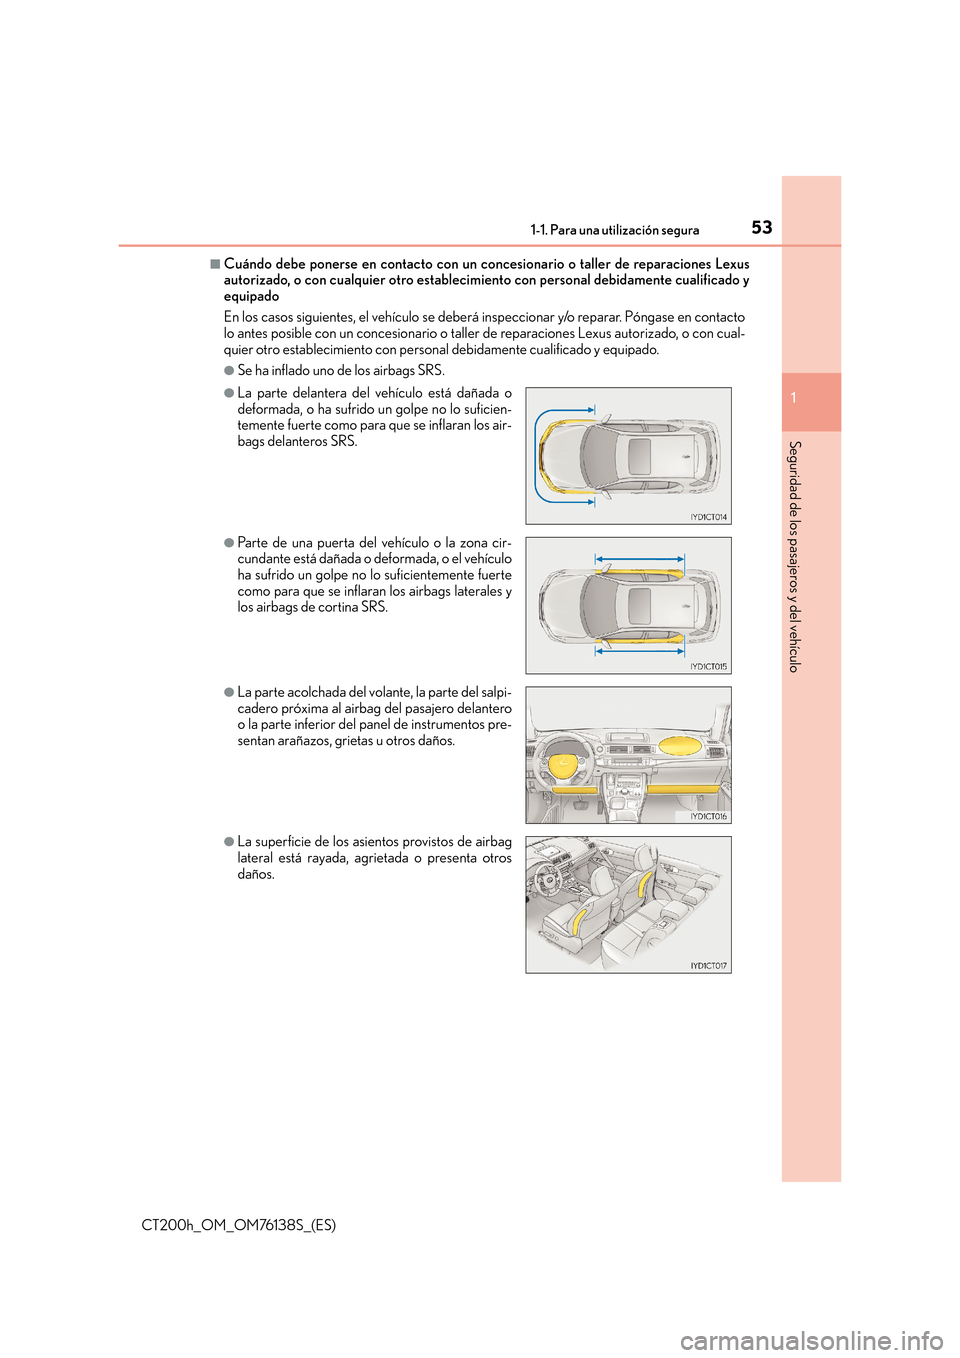 Lexus CT200h 2014  Manual del propietario (in Spanish) 531-1. Para una utilización segura
1
CT200h_OM_OM76138S_(ES)
Seguridad de los pasajeros y del vehículo
■Cuándo debe ponerse en contacto con un concesionario o taller de reparaciones Lexus
autoriz